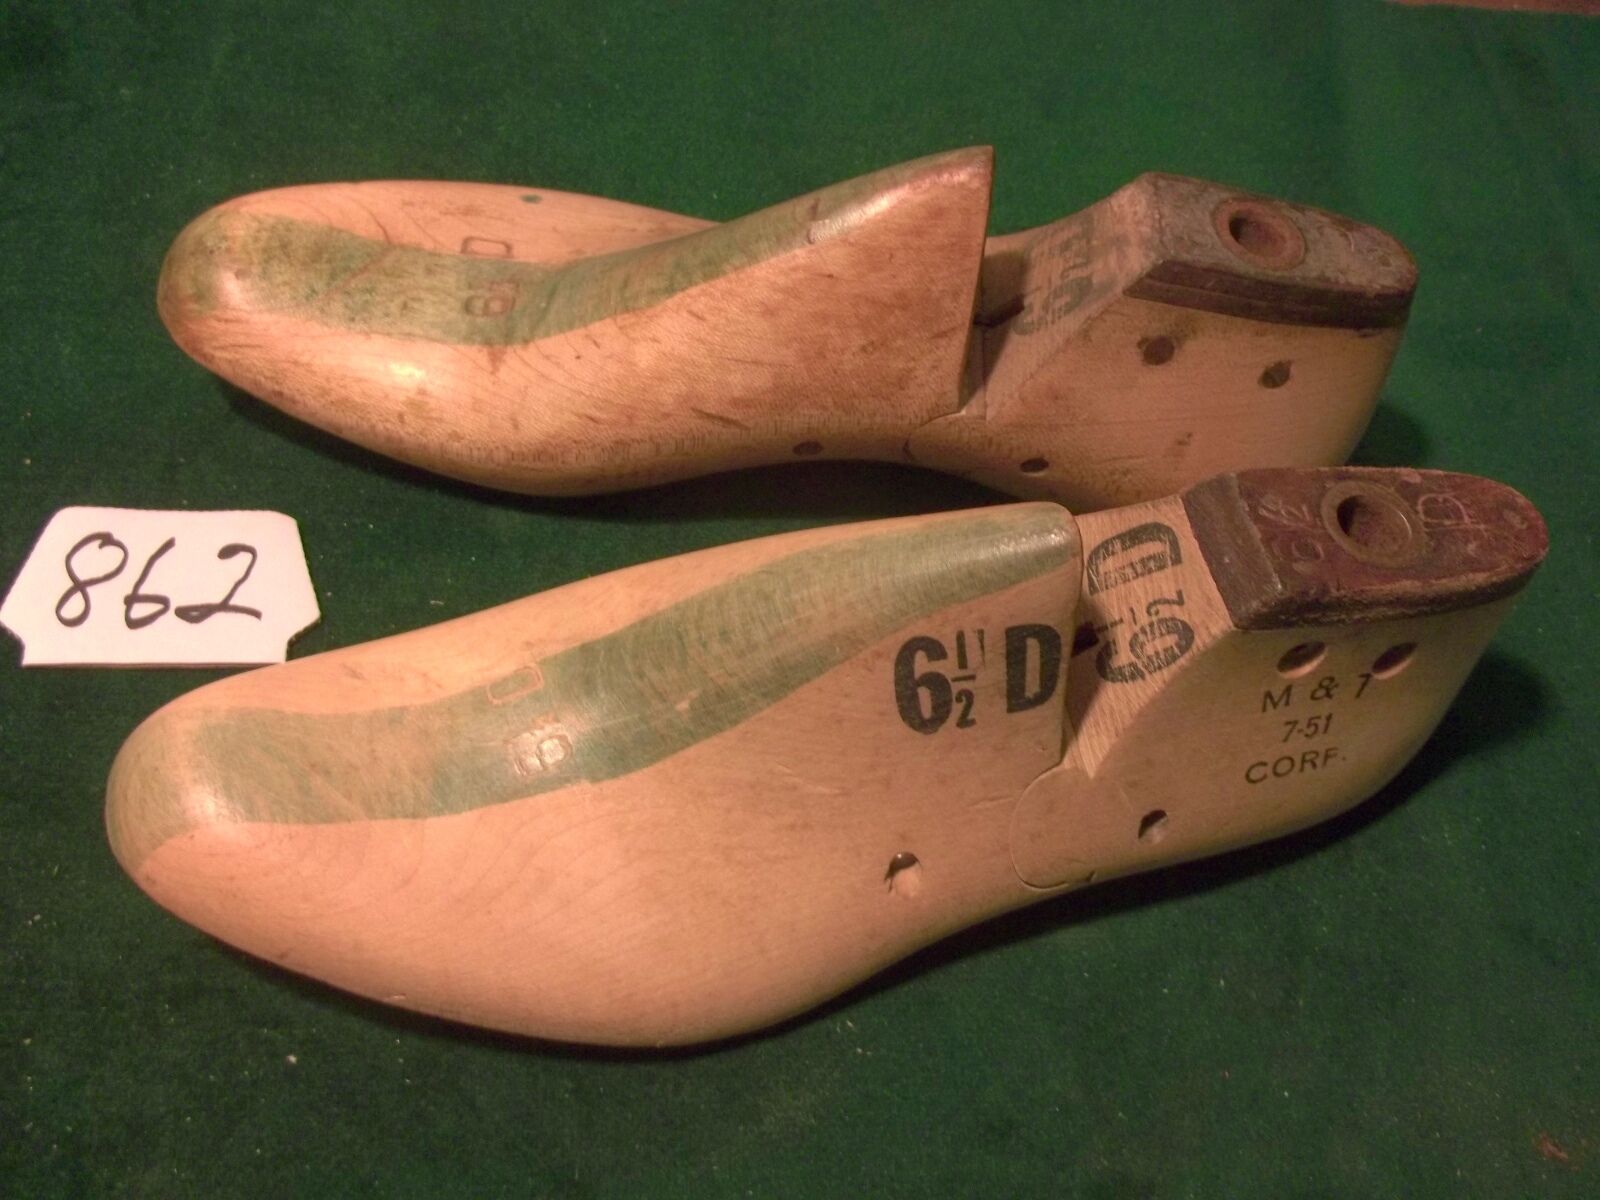 Vintage 1951 Pair US NAVY Size 6-1/2 D M & T Industrial Shoe Factory Lasts #862